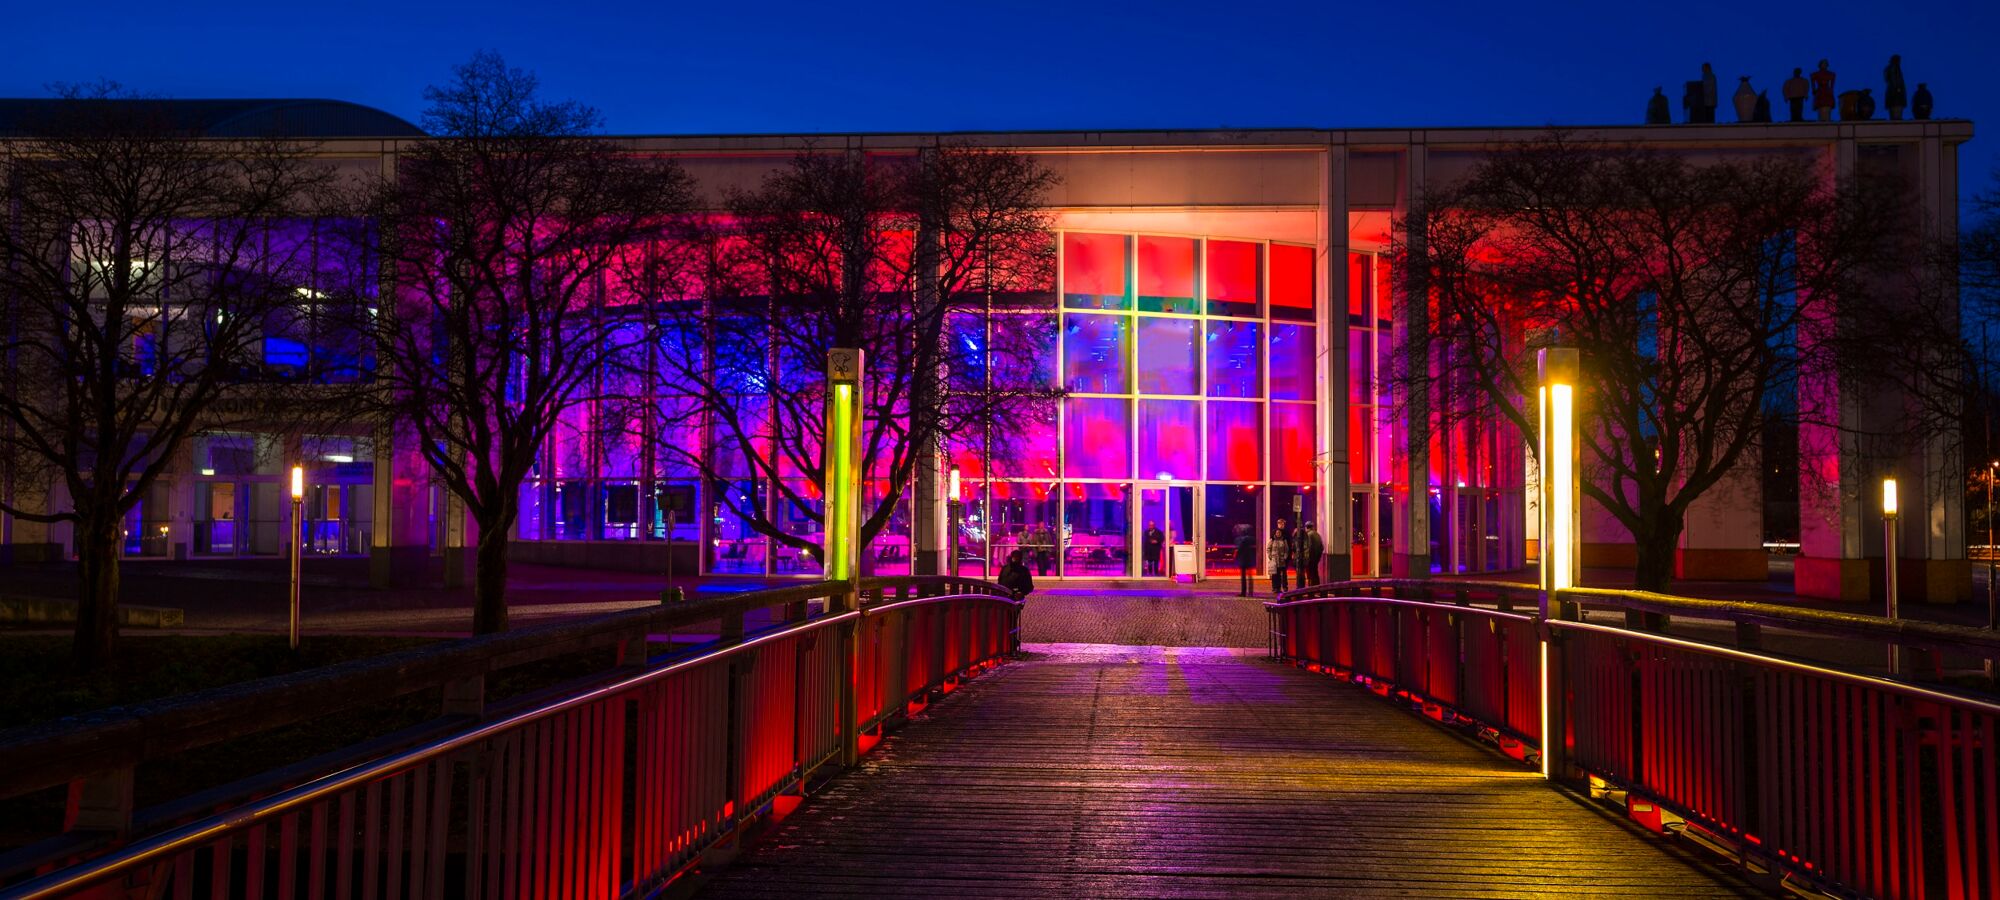 Blick auf die illuminierte Rotunde Musik- und Kongresshalle Luebeck